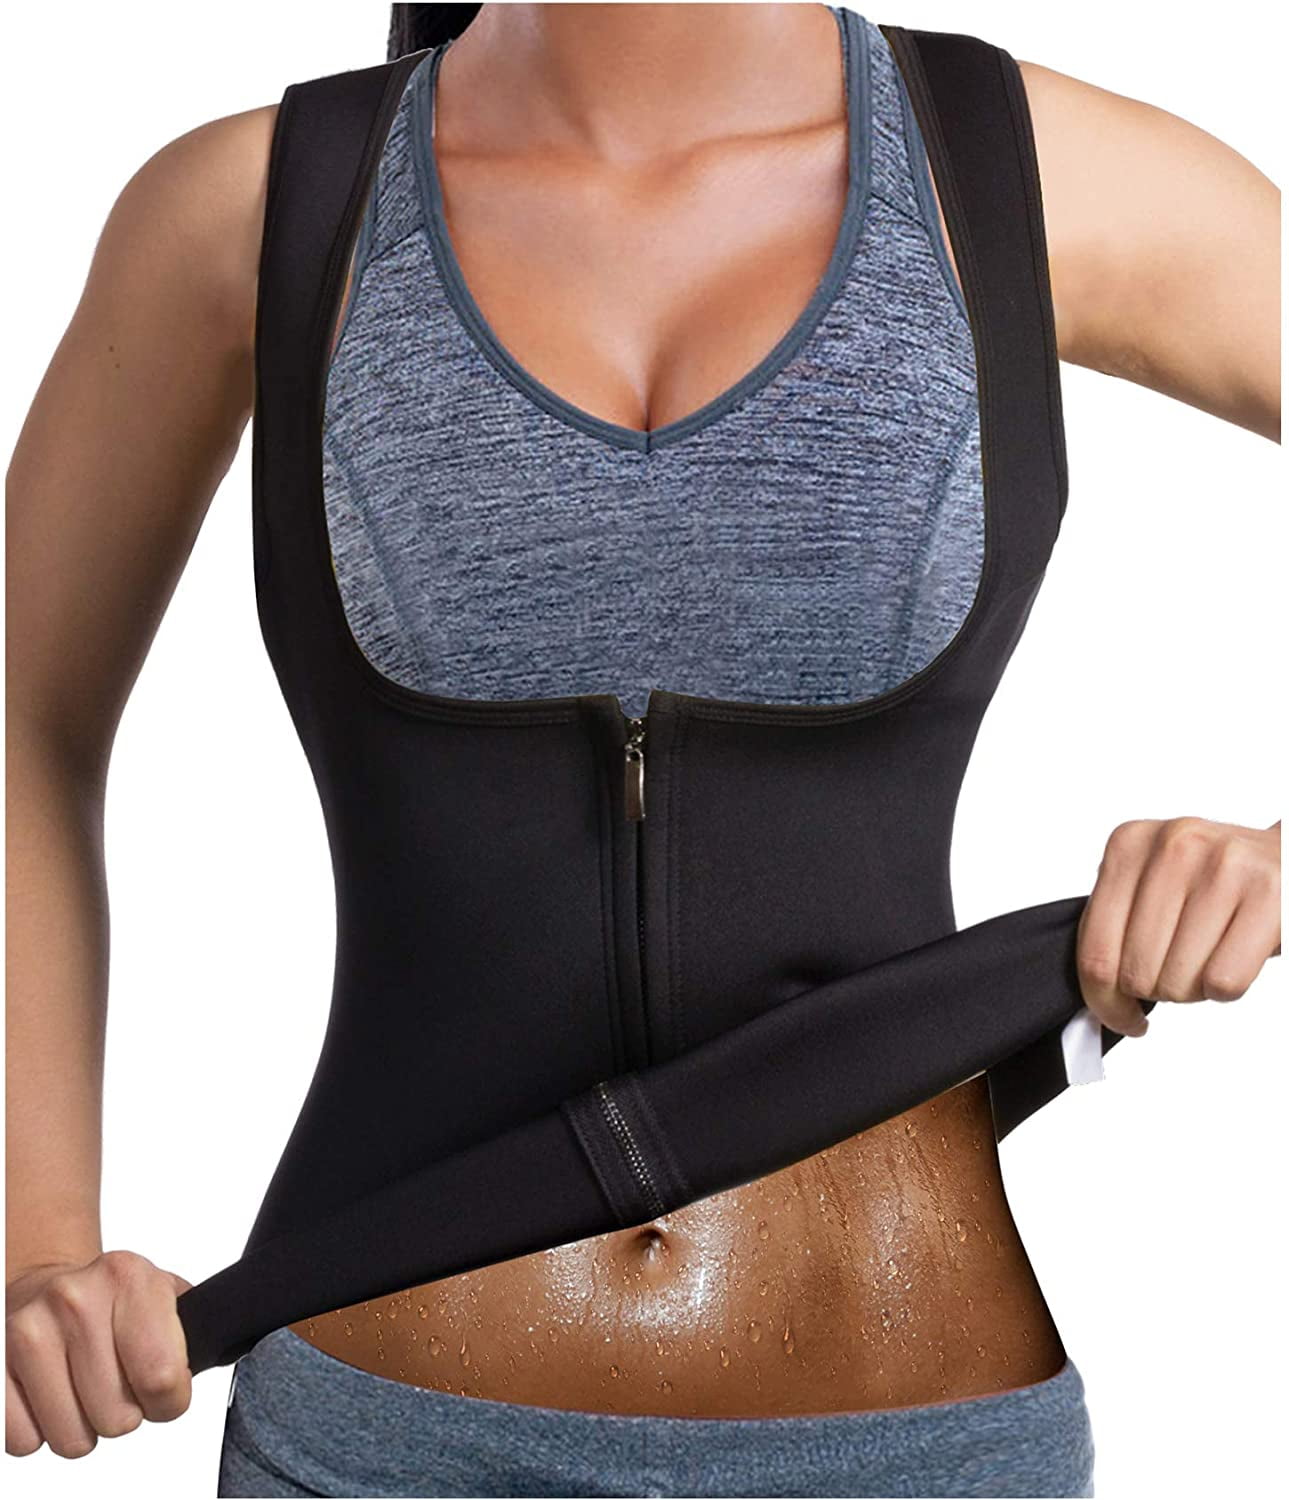 Sauna Neoprene Full Body Shaper Slimming Vest For Women Waist Trainer Underbust 